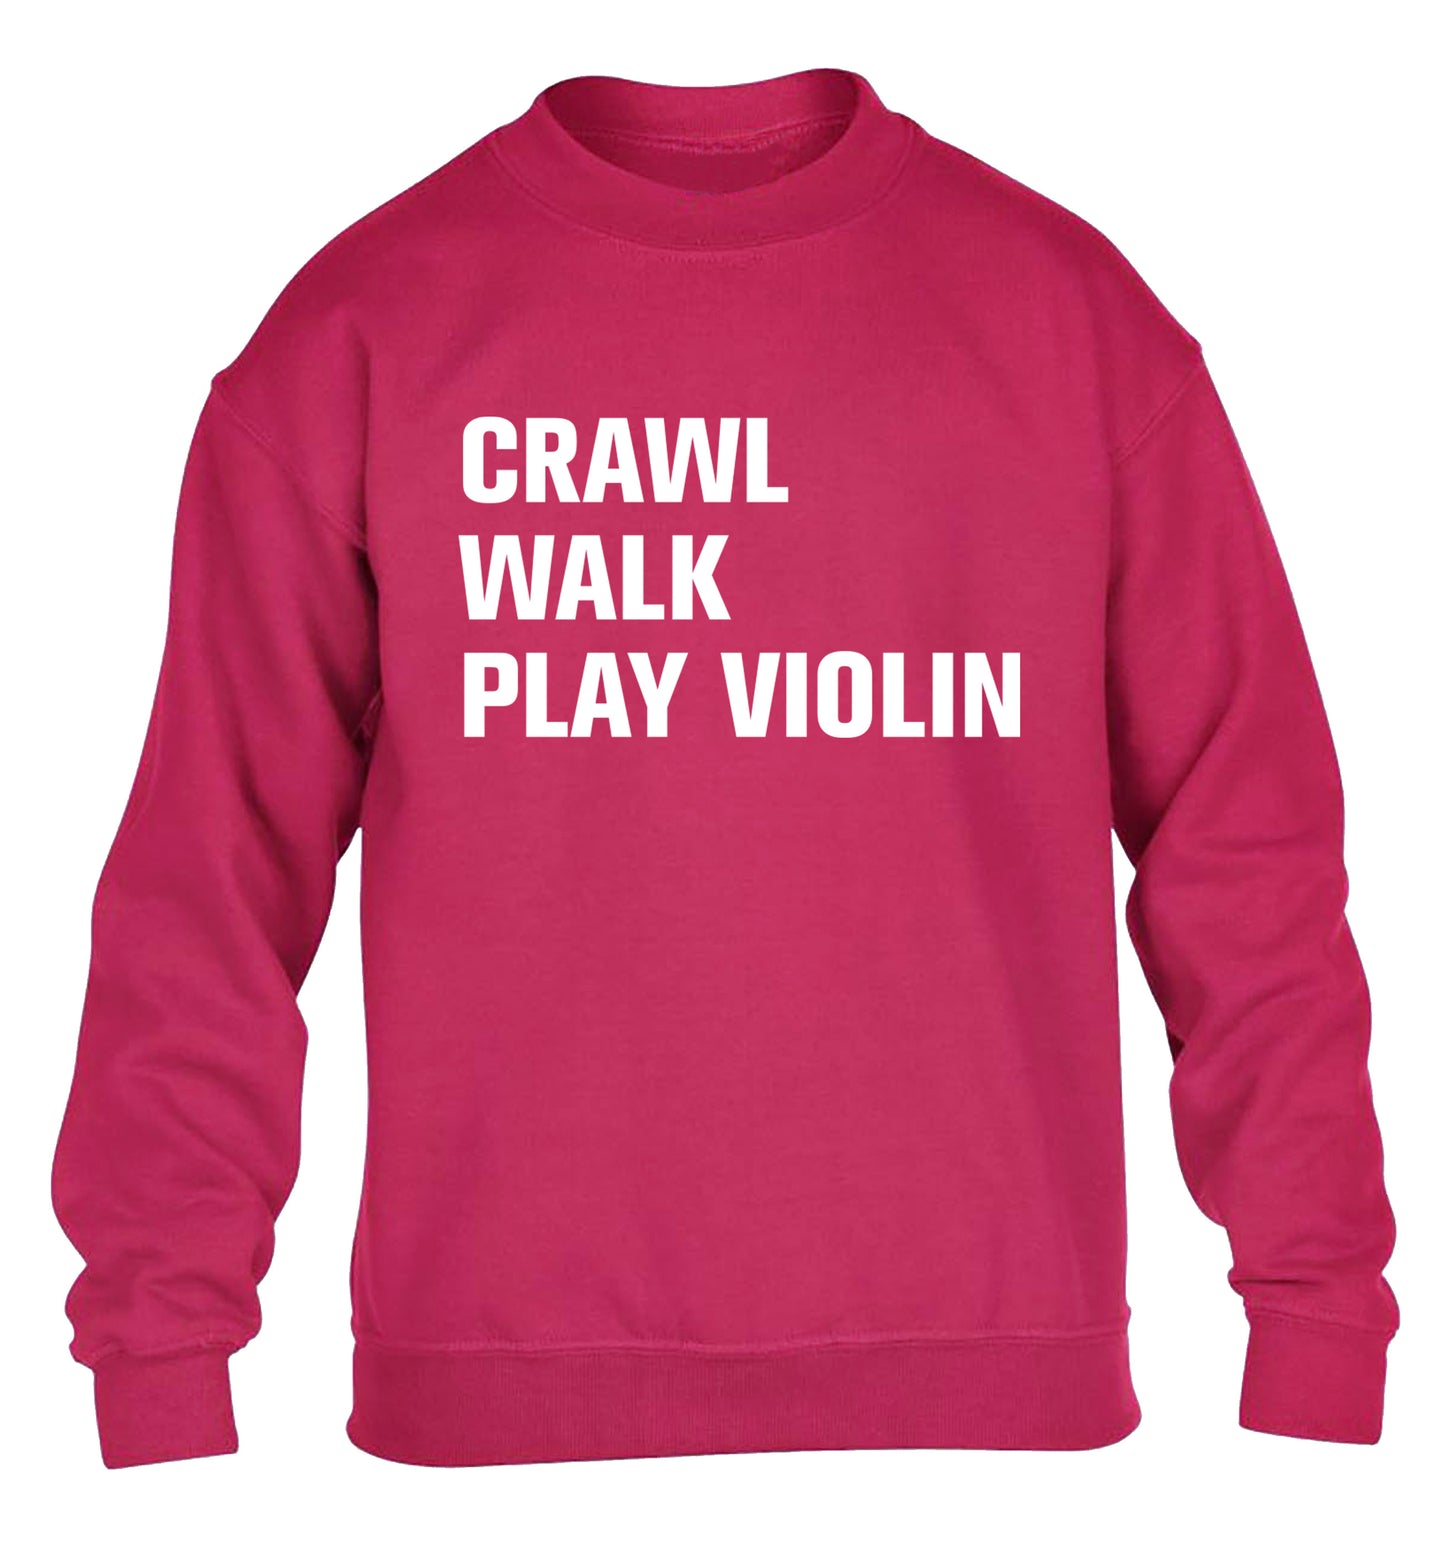 Crawl Walk Play Violin children's pink sweater 12-13 Years